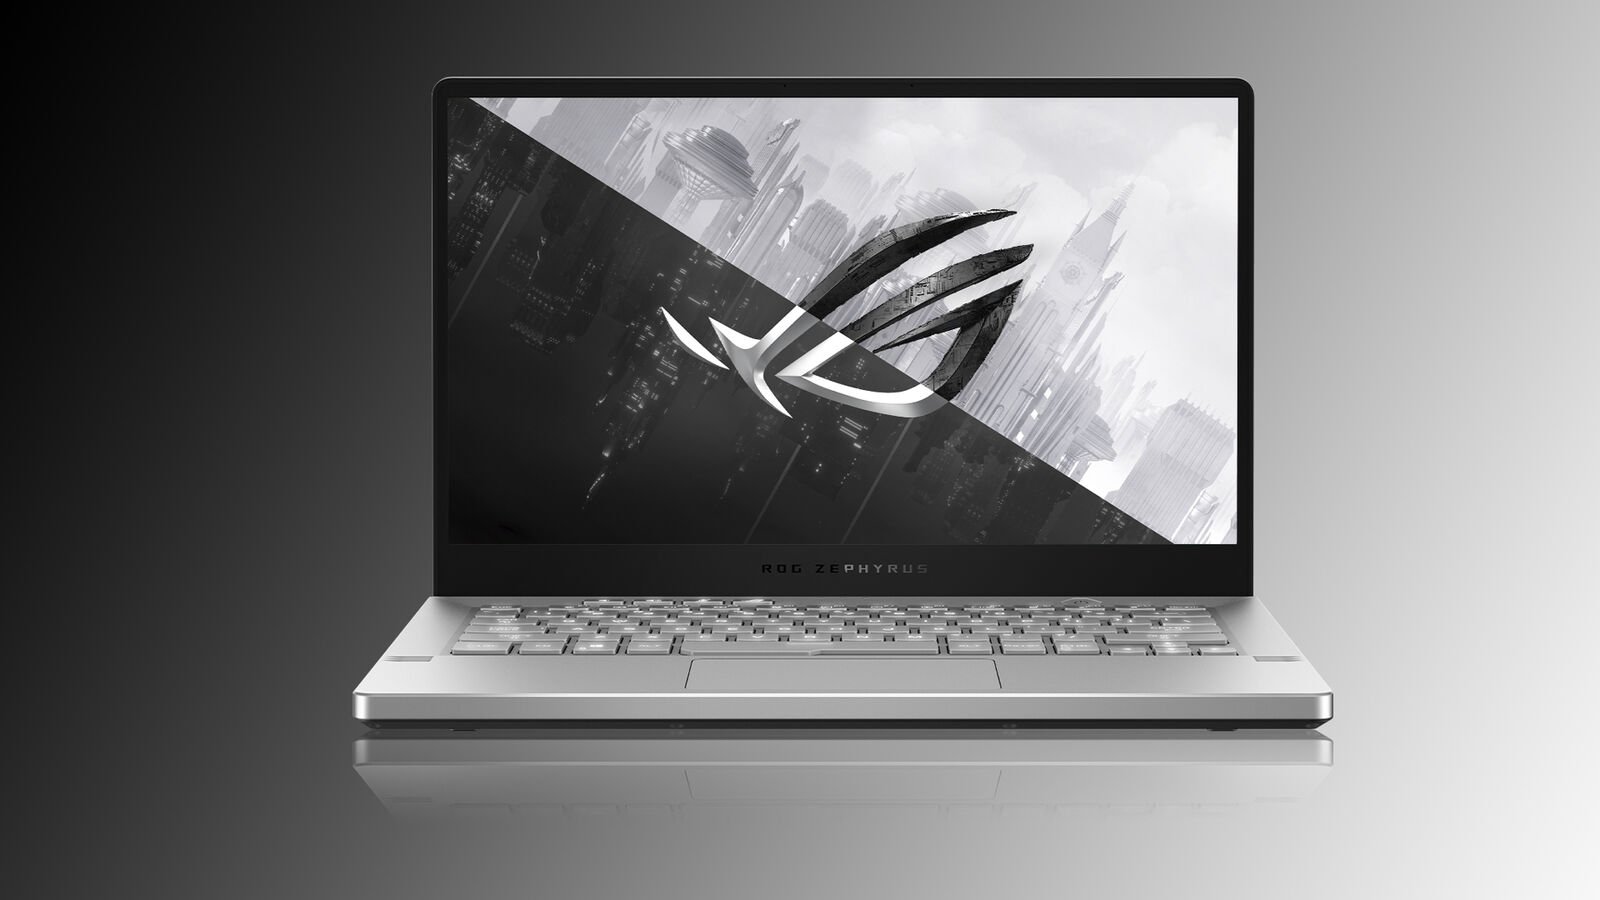 Kup ten fantastyczny 14-calowy laptop do gier ROG Zephyrus G14 za 450 GBP zniżki